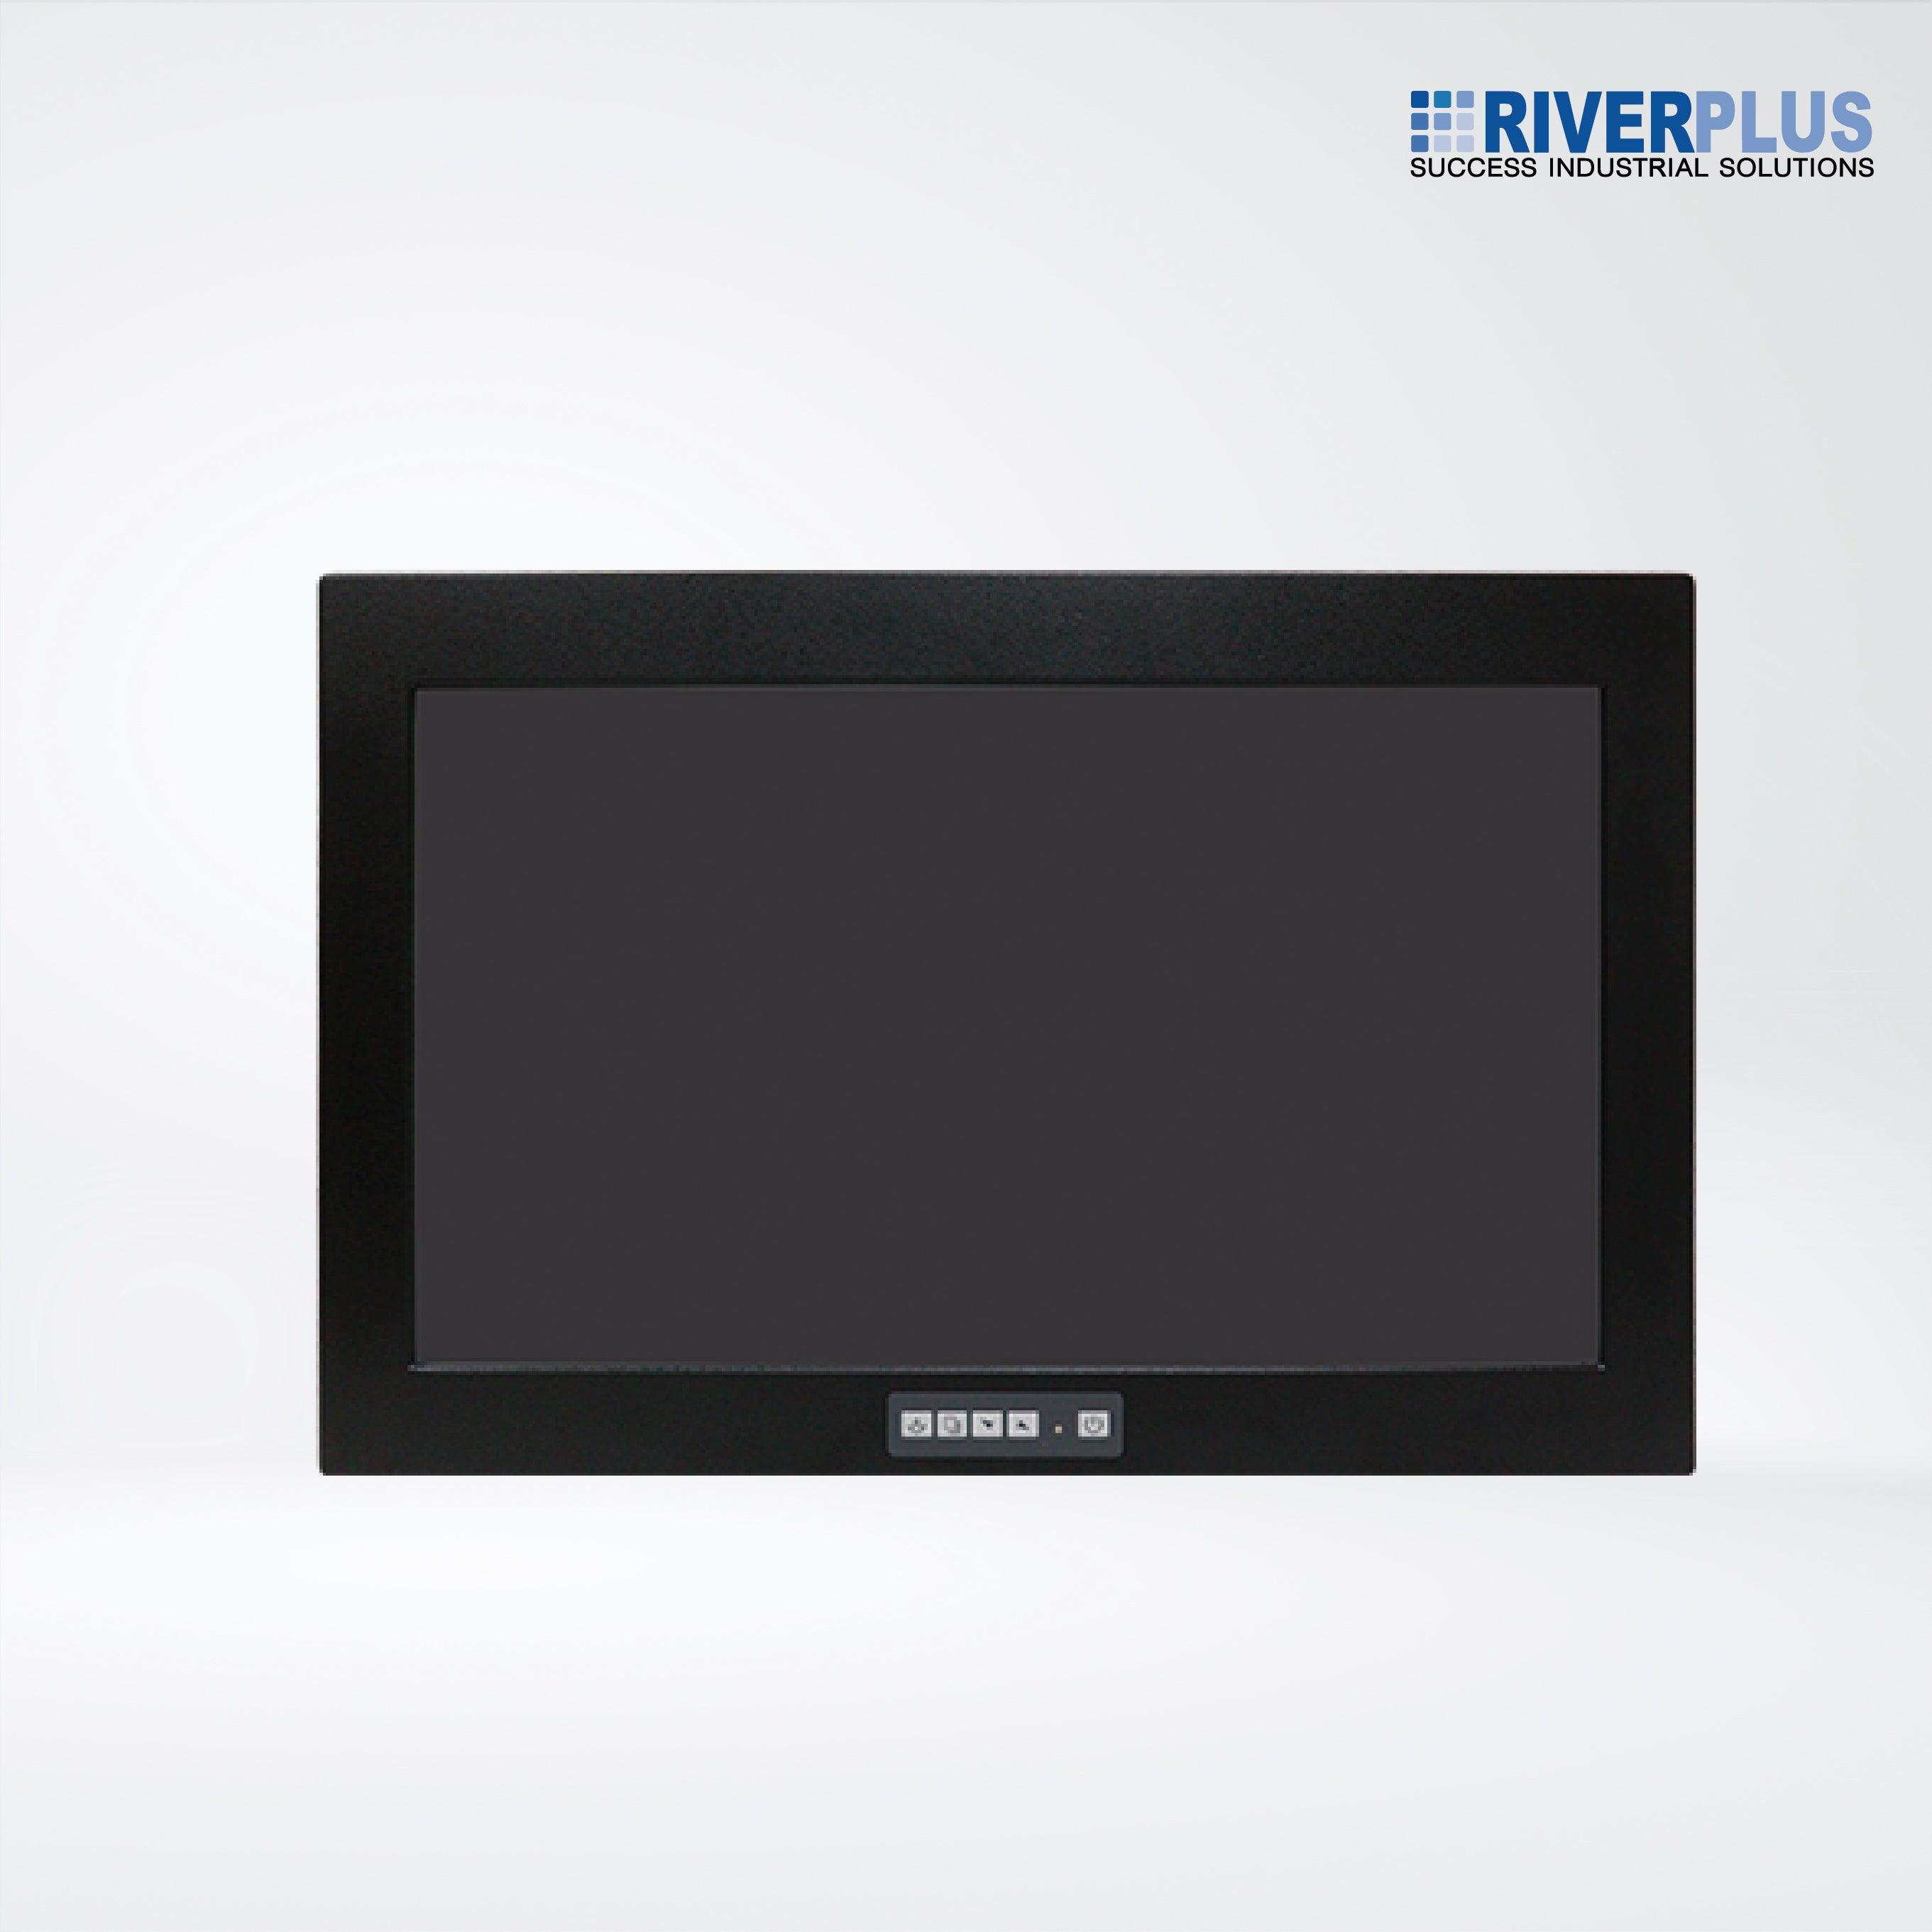 ADP-1224A 21.5” Steel Enclosure LCD Display - Riverplus